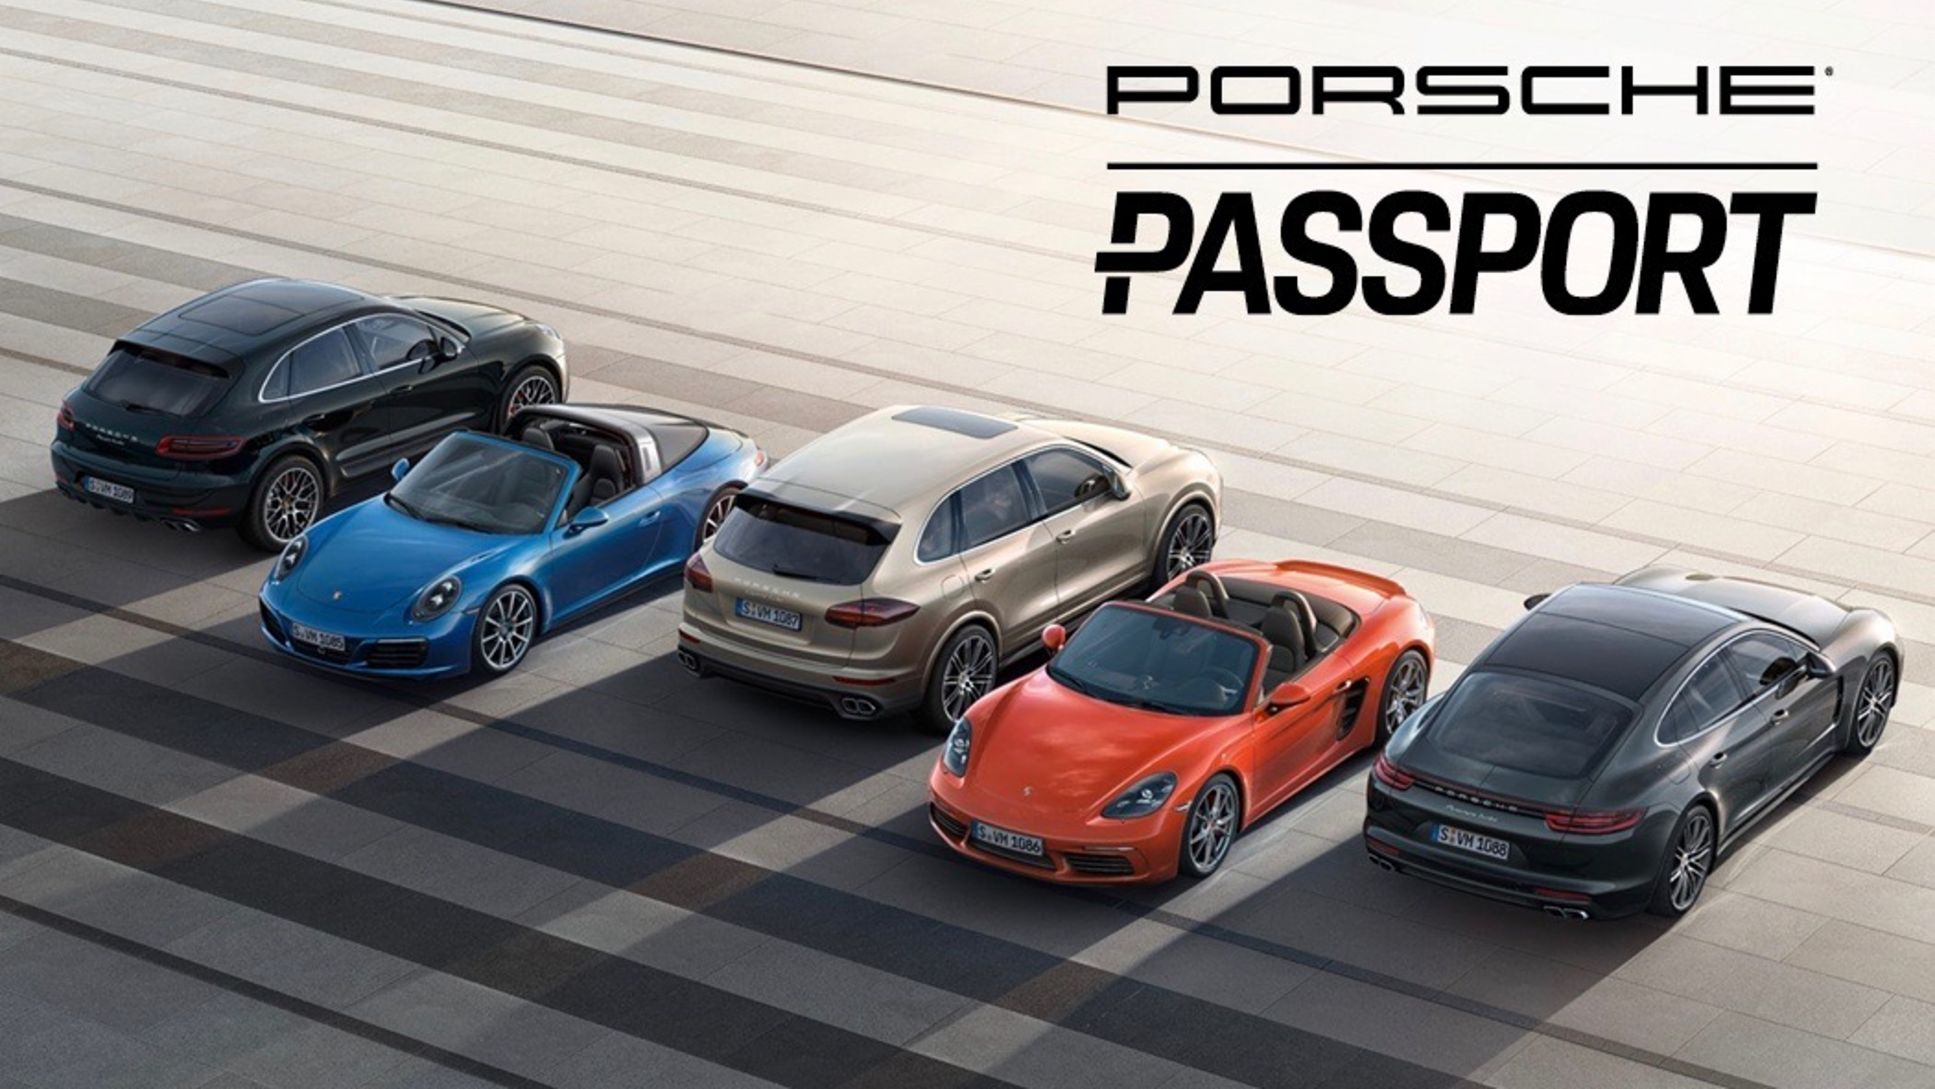 Porsche Passport, 2017, Porsche AG